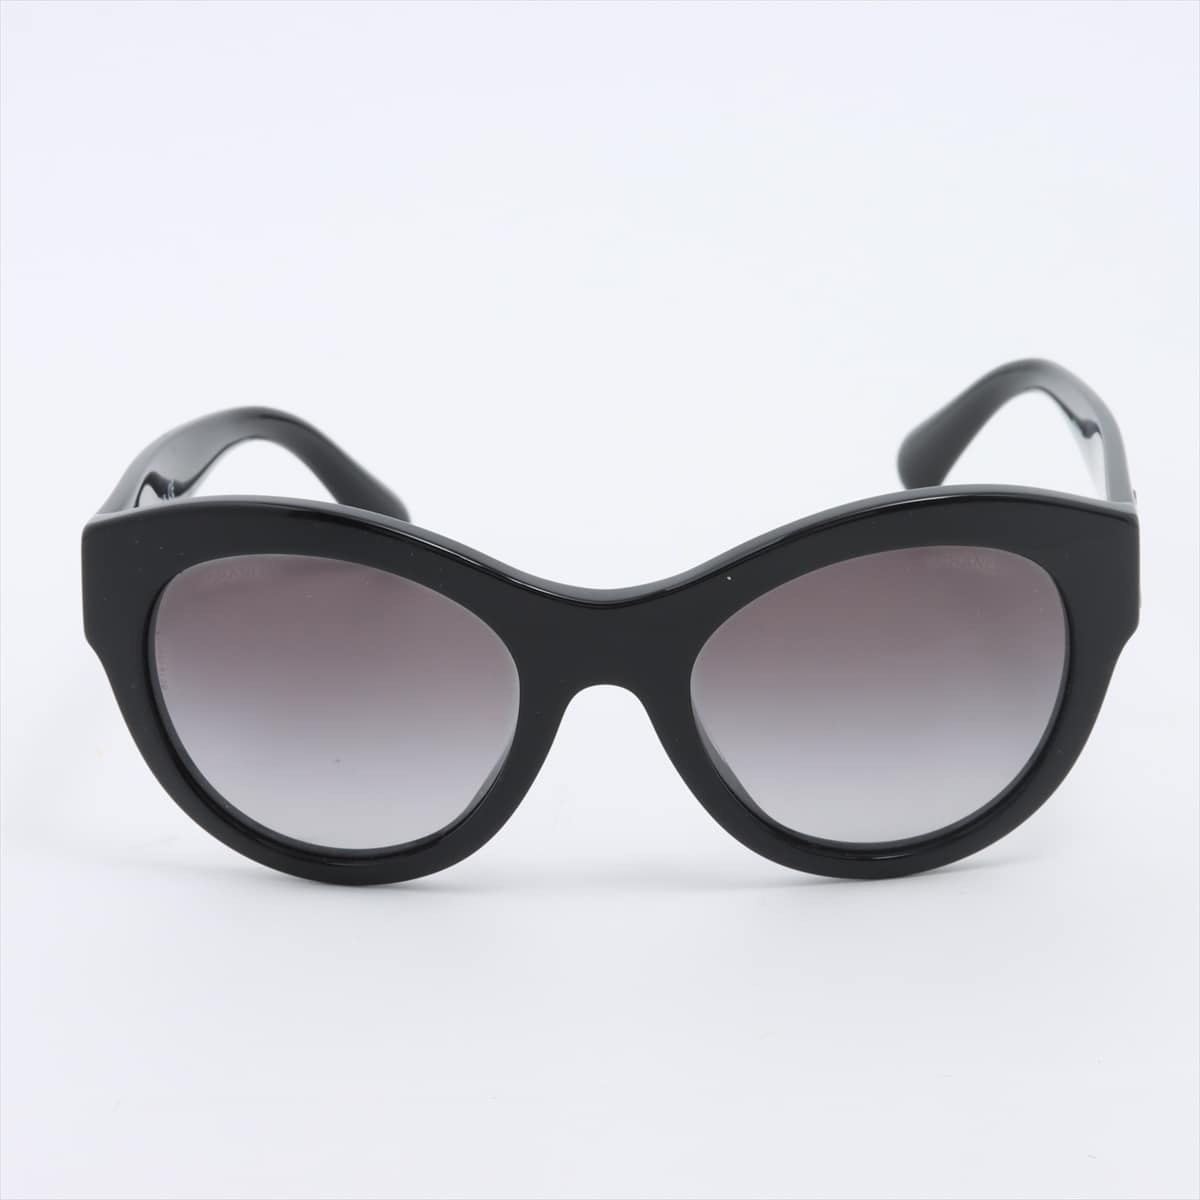 Chanel 5371-A Coco Mark Sunglasses Plastic Black